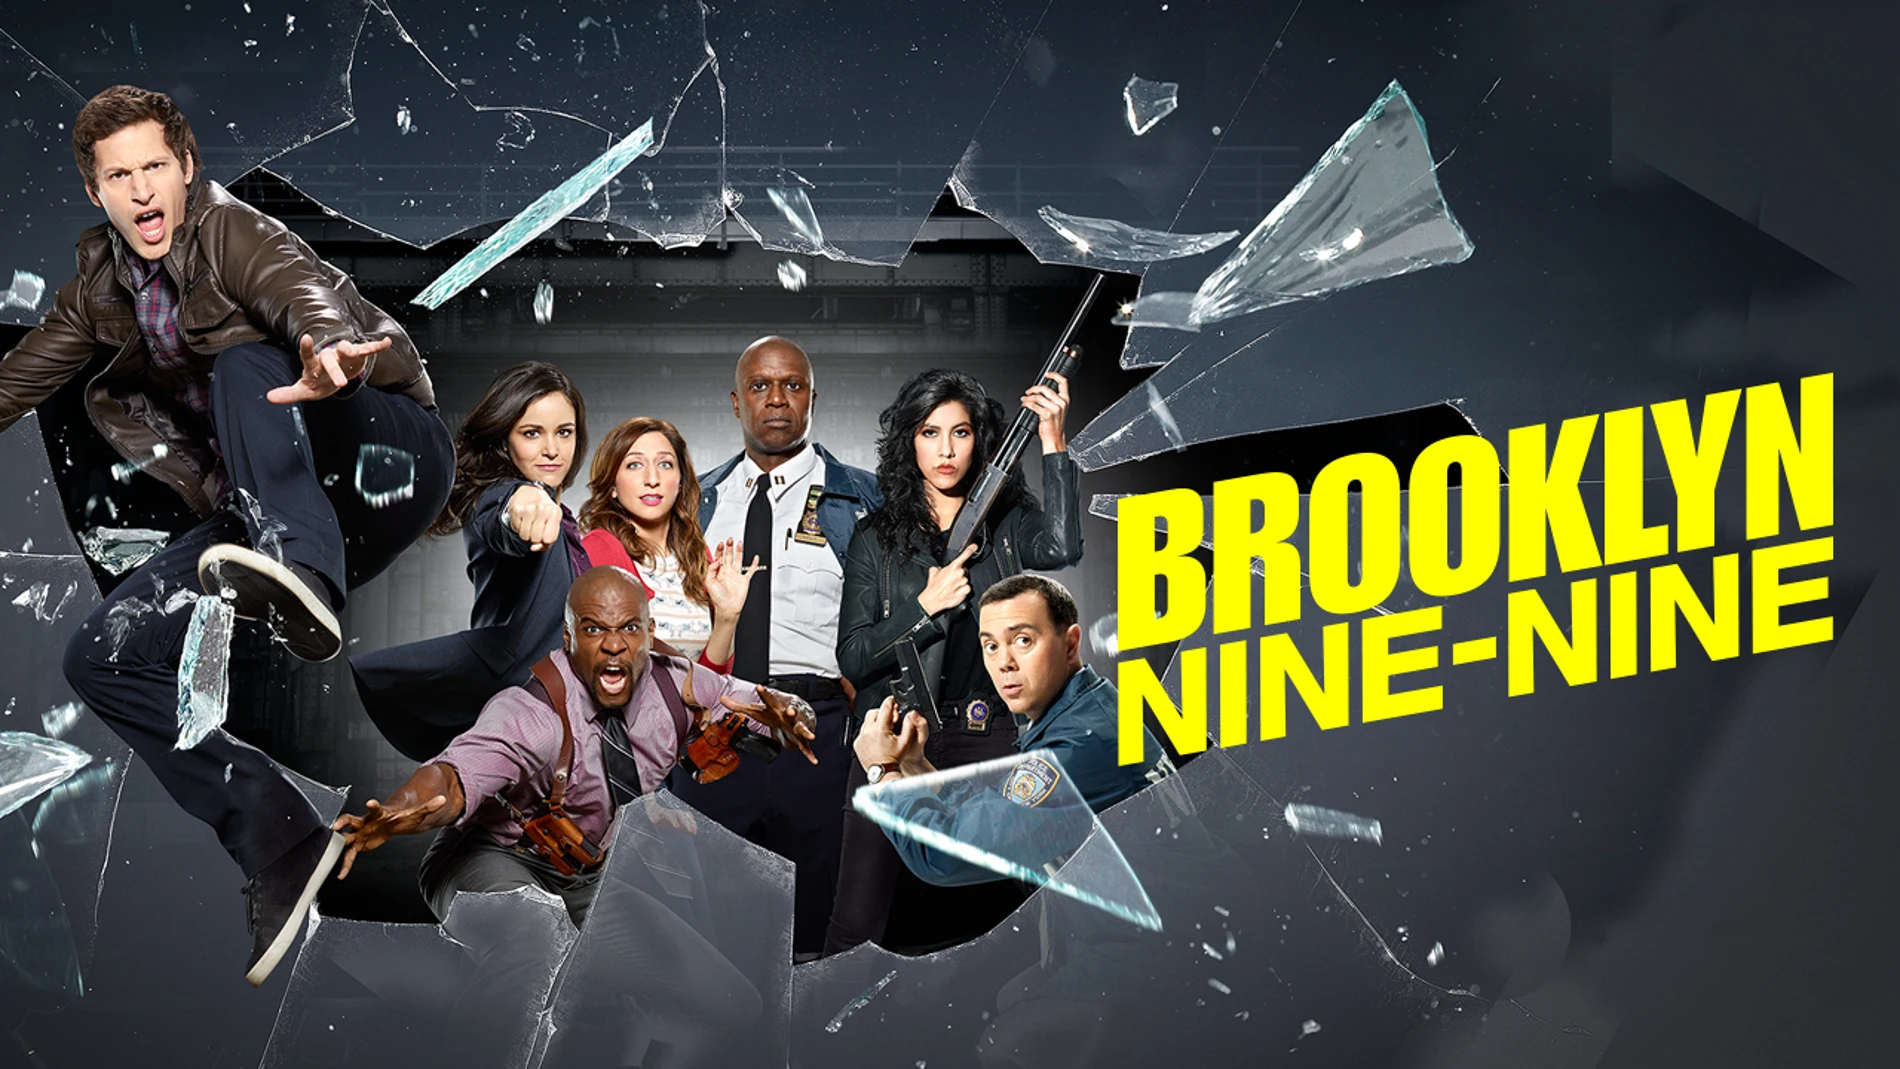 Las 10 curiosidades que debes saber sobre 'Brooklyn Nine-Nine'